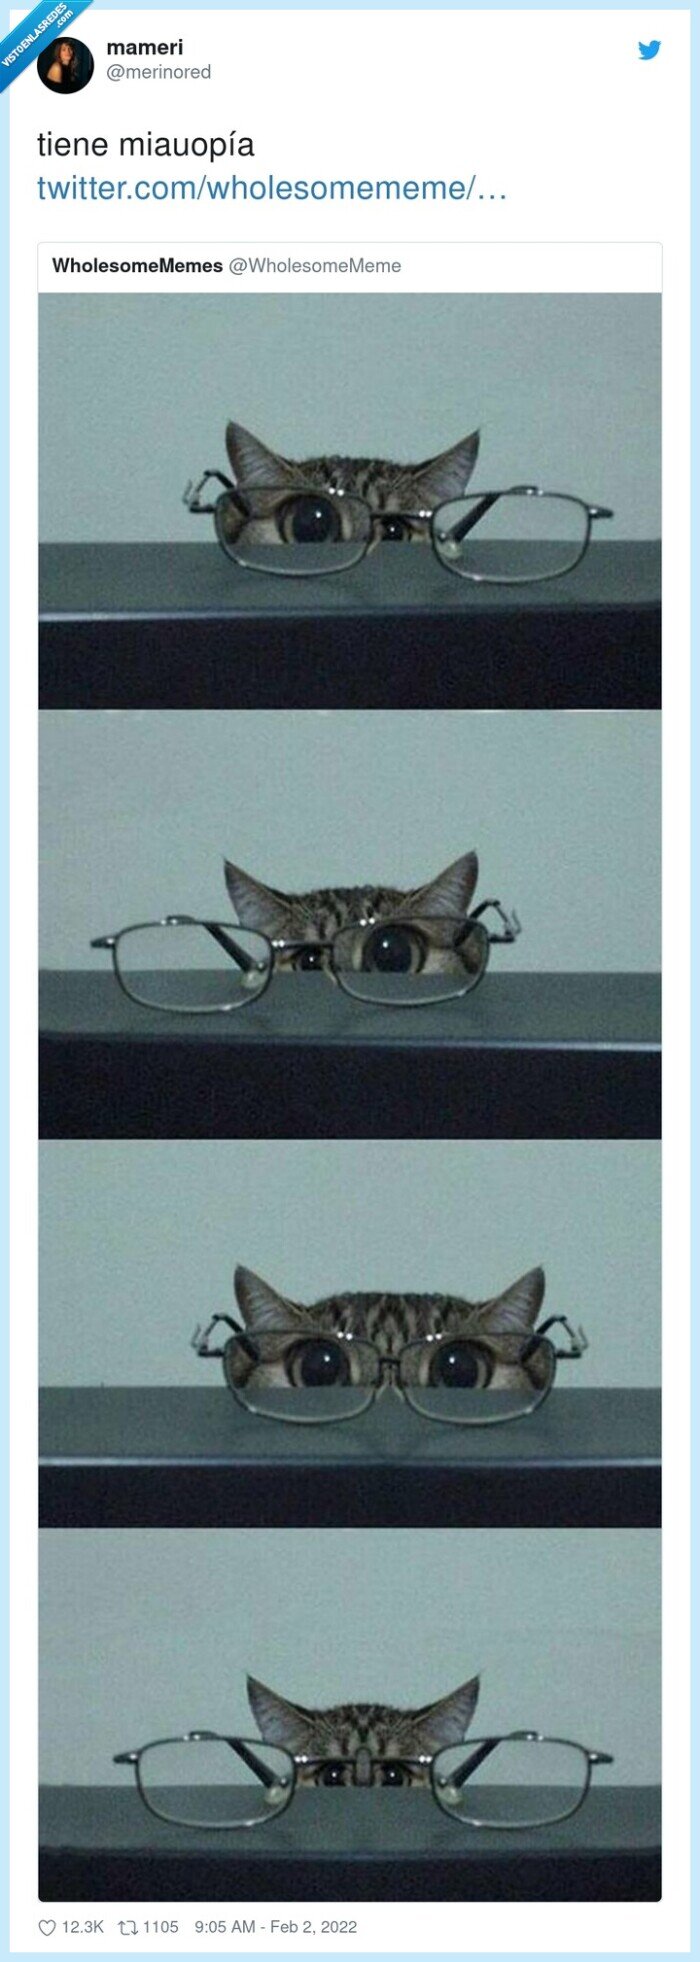 miauopía,gafas,gato